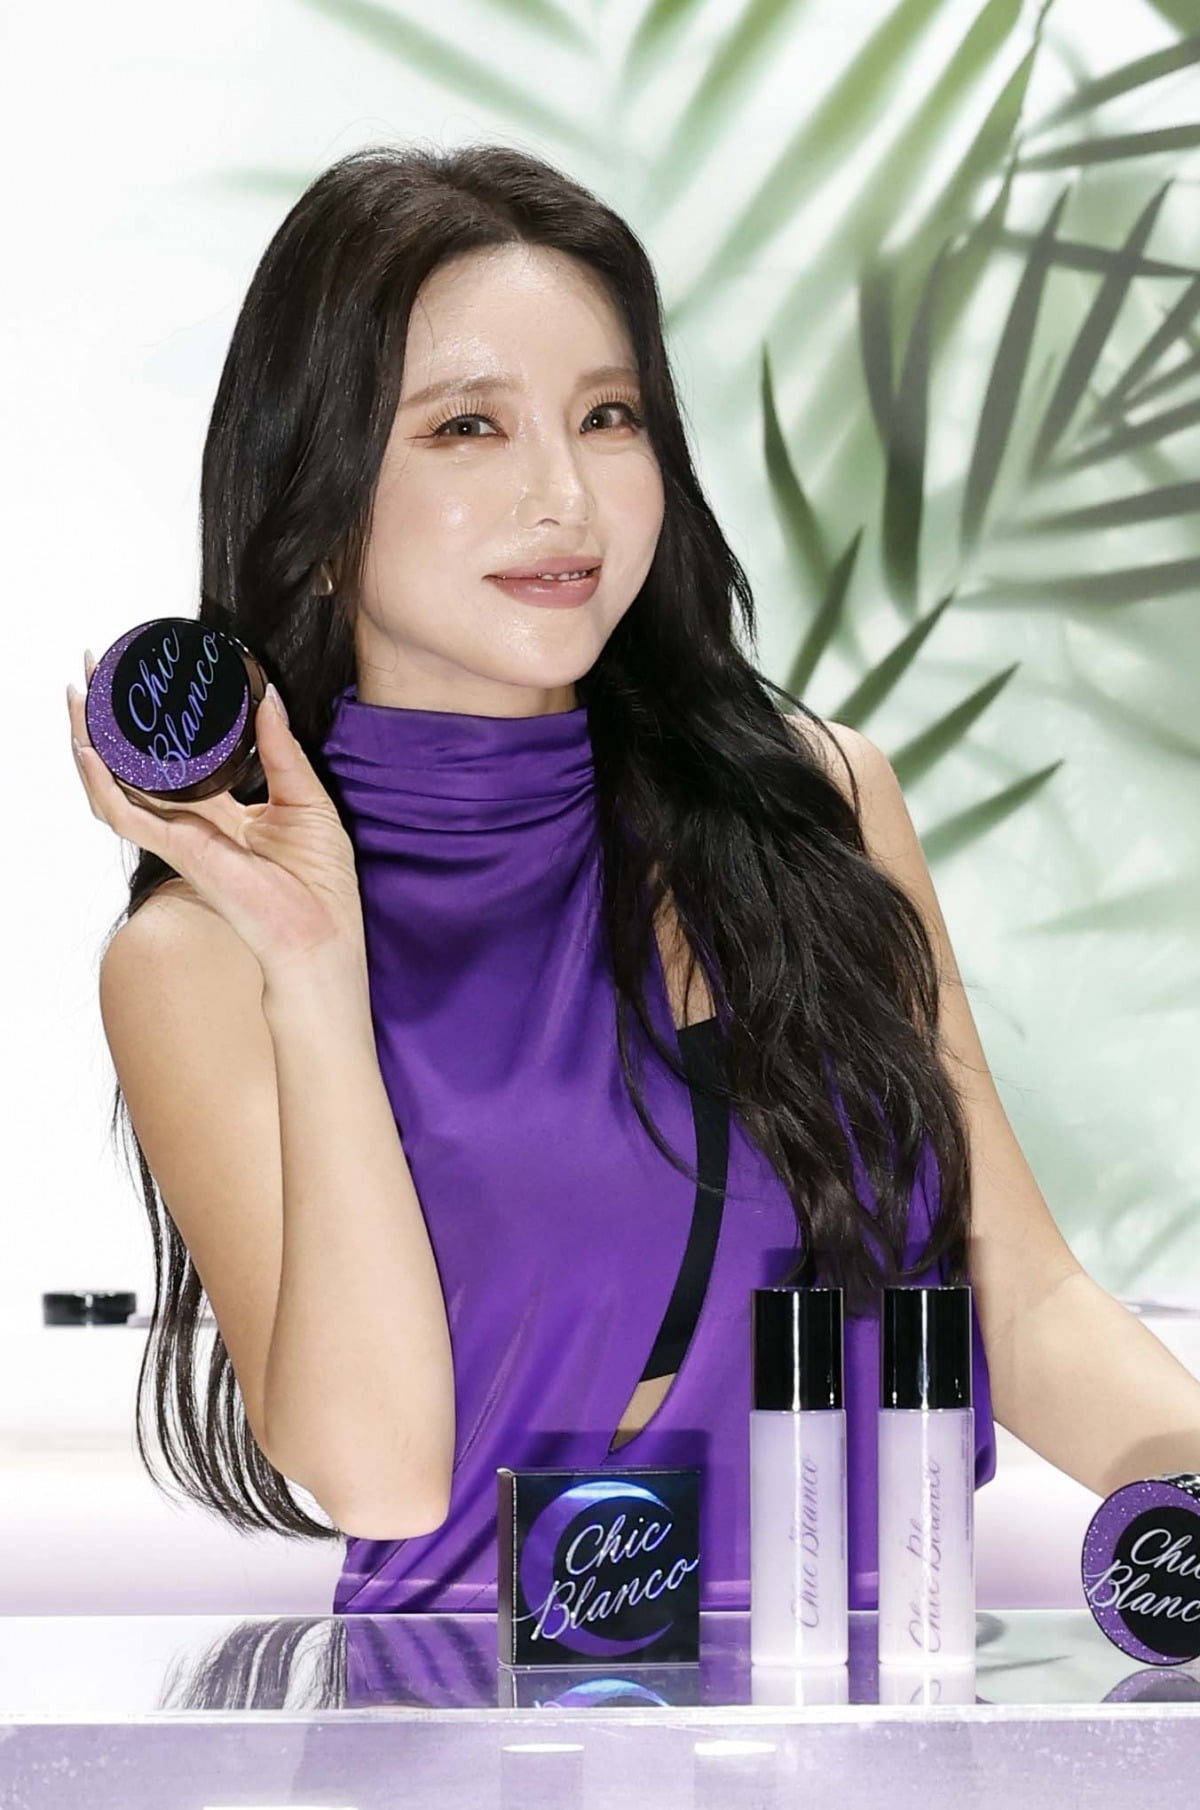 홍진영이 본인의 뷰티 브랜드 '시크 블랑코' 제품을 선보이고 있다.  사진=한국경제신문